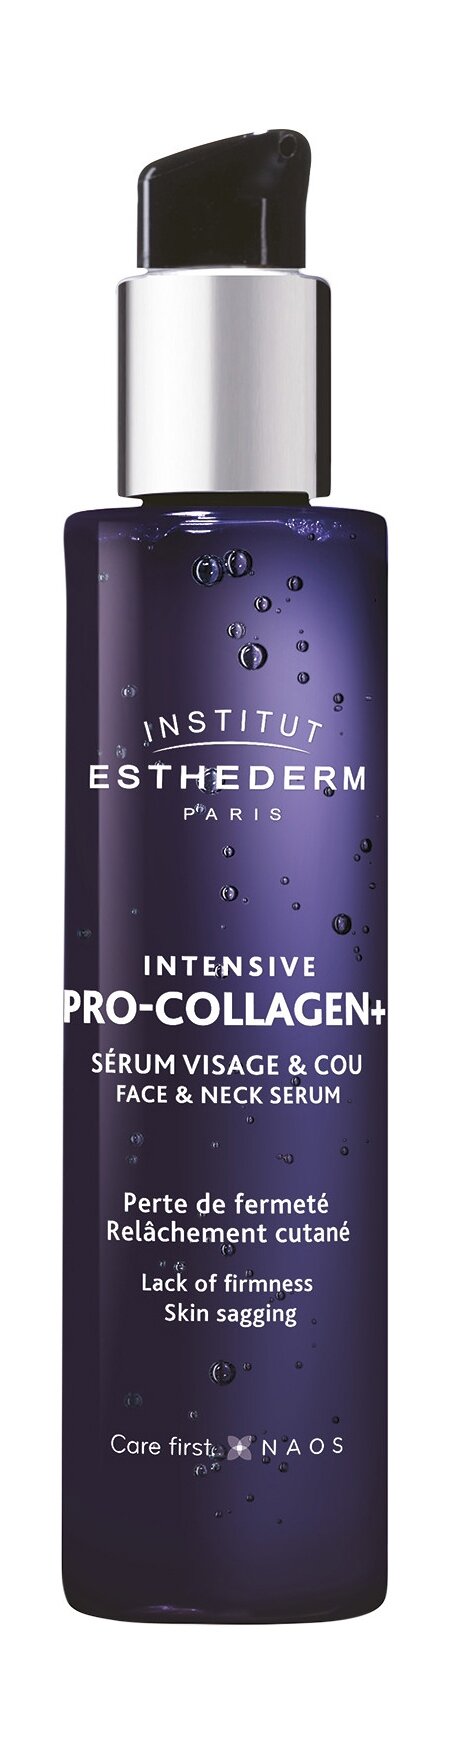 Сыворотка для восстановления выработки коллагена в коже лица и шеи Institut Esthederm Intensive Pro-Collagen+ Face & Neck Serum 30 мл .